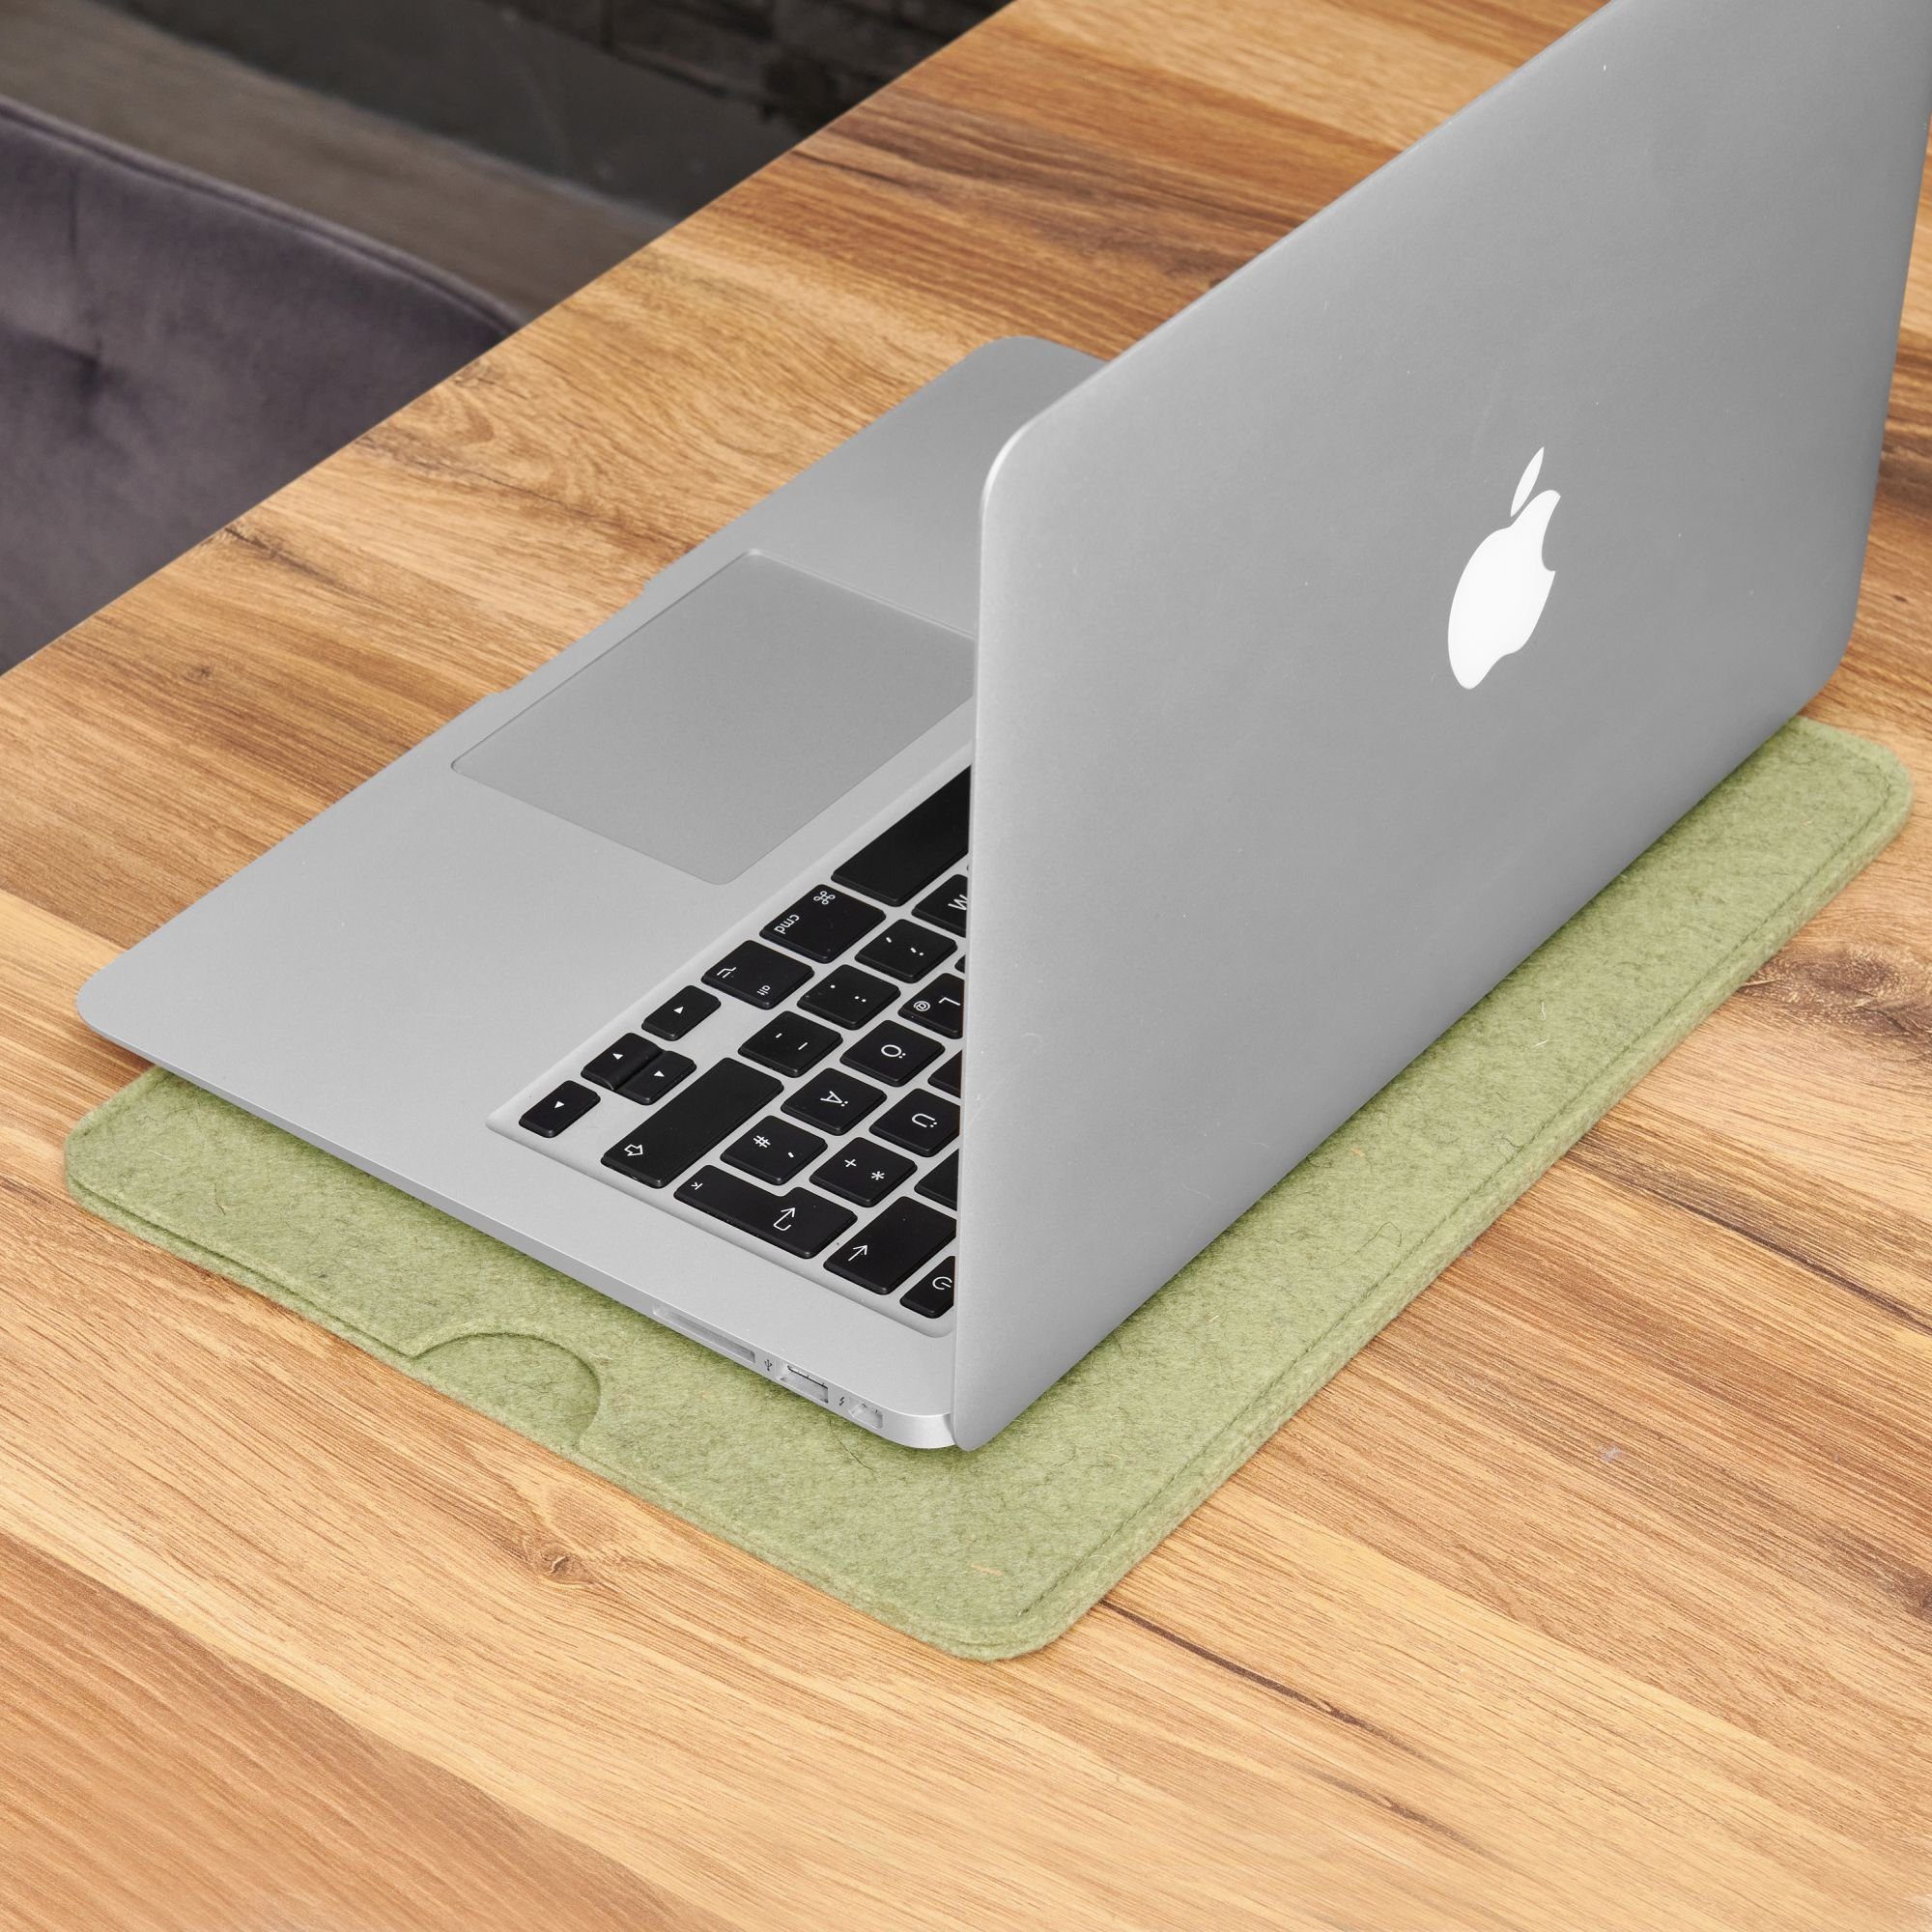 CoverKingz Laptoptasche MacBook Notebook Apple Air/Pro 100% 15" Notebook Schutz Filz, Tasche Hülle Schurwolle, Tasche Handmade Grün Etui für